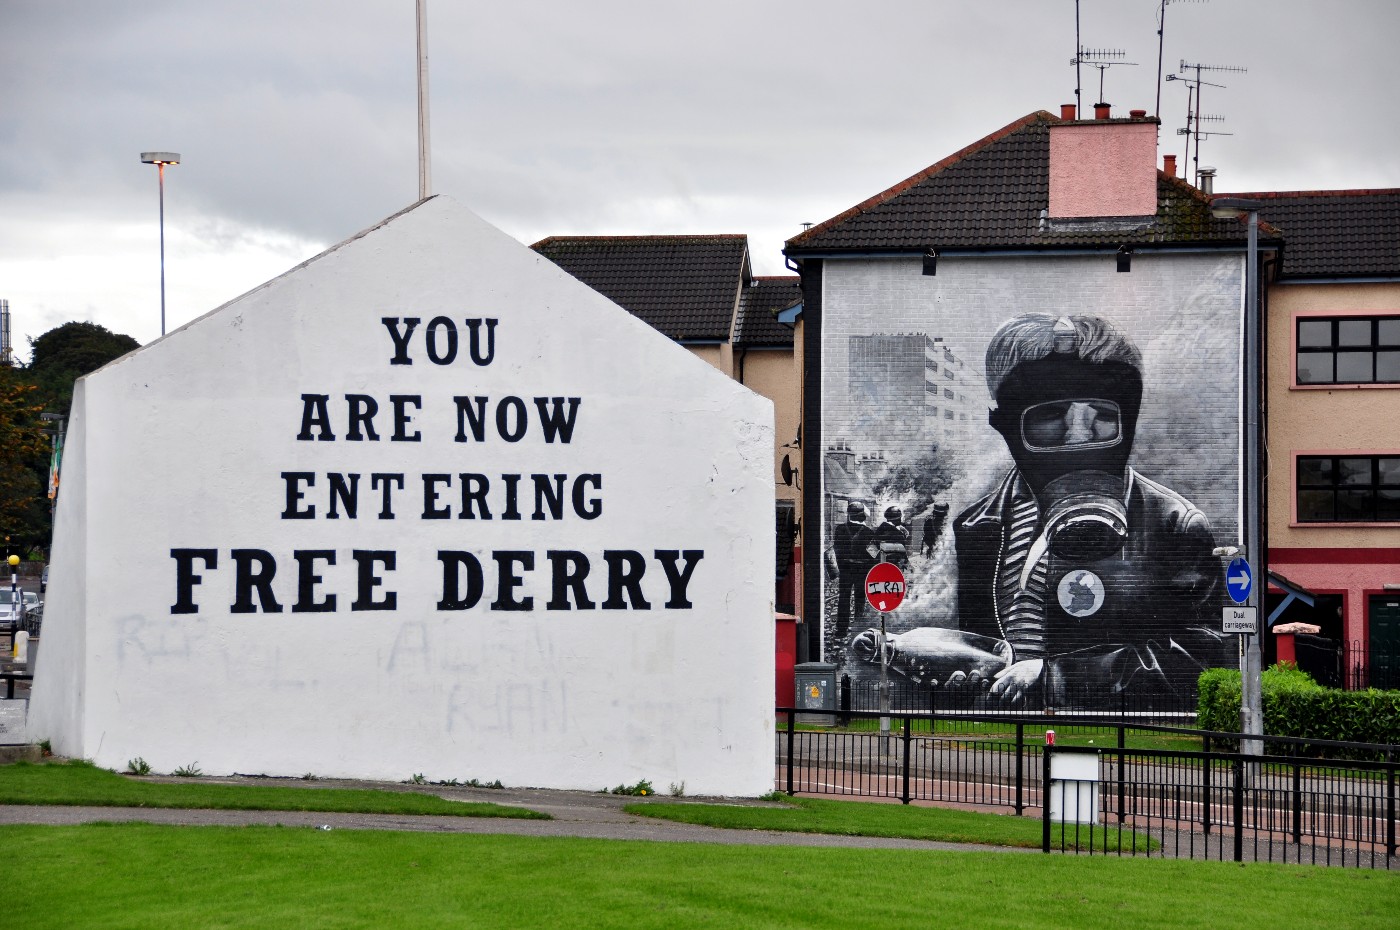 Derry, let’s go together